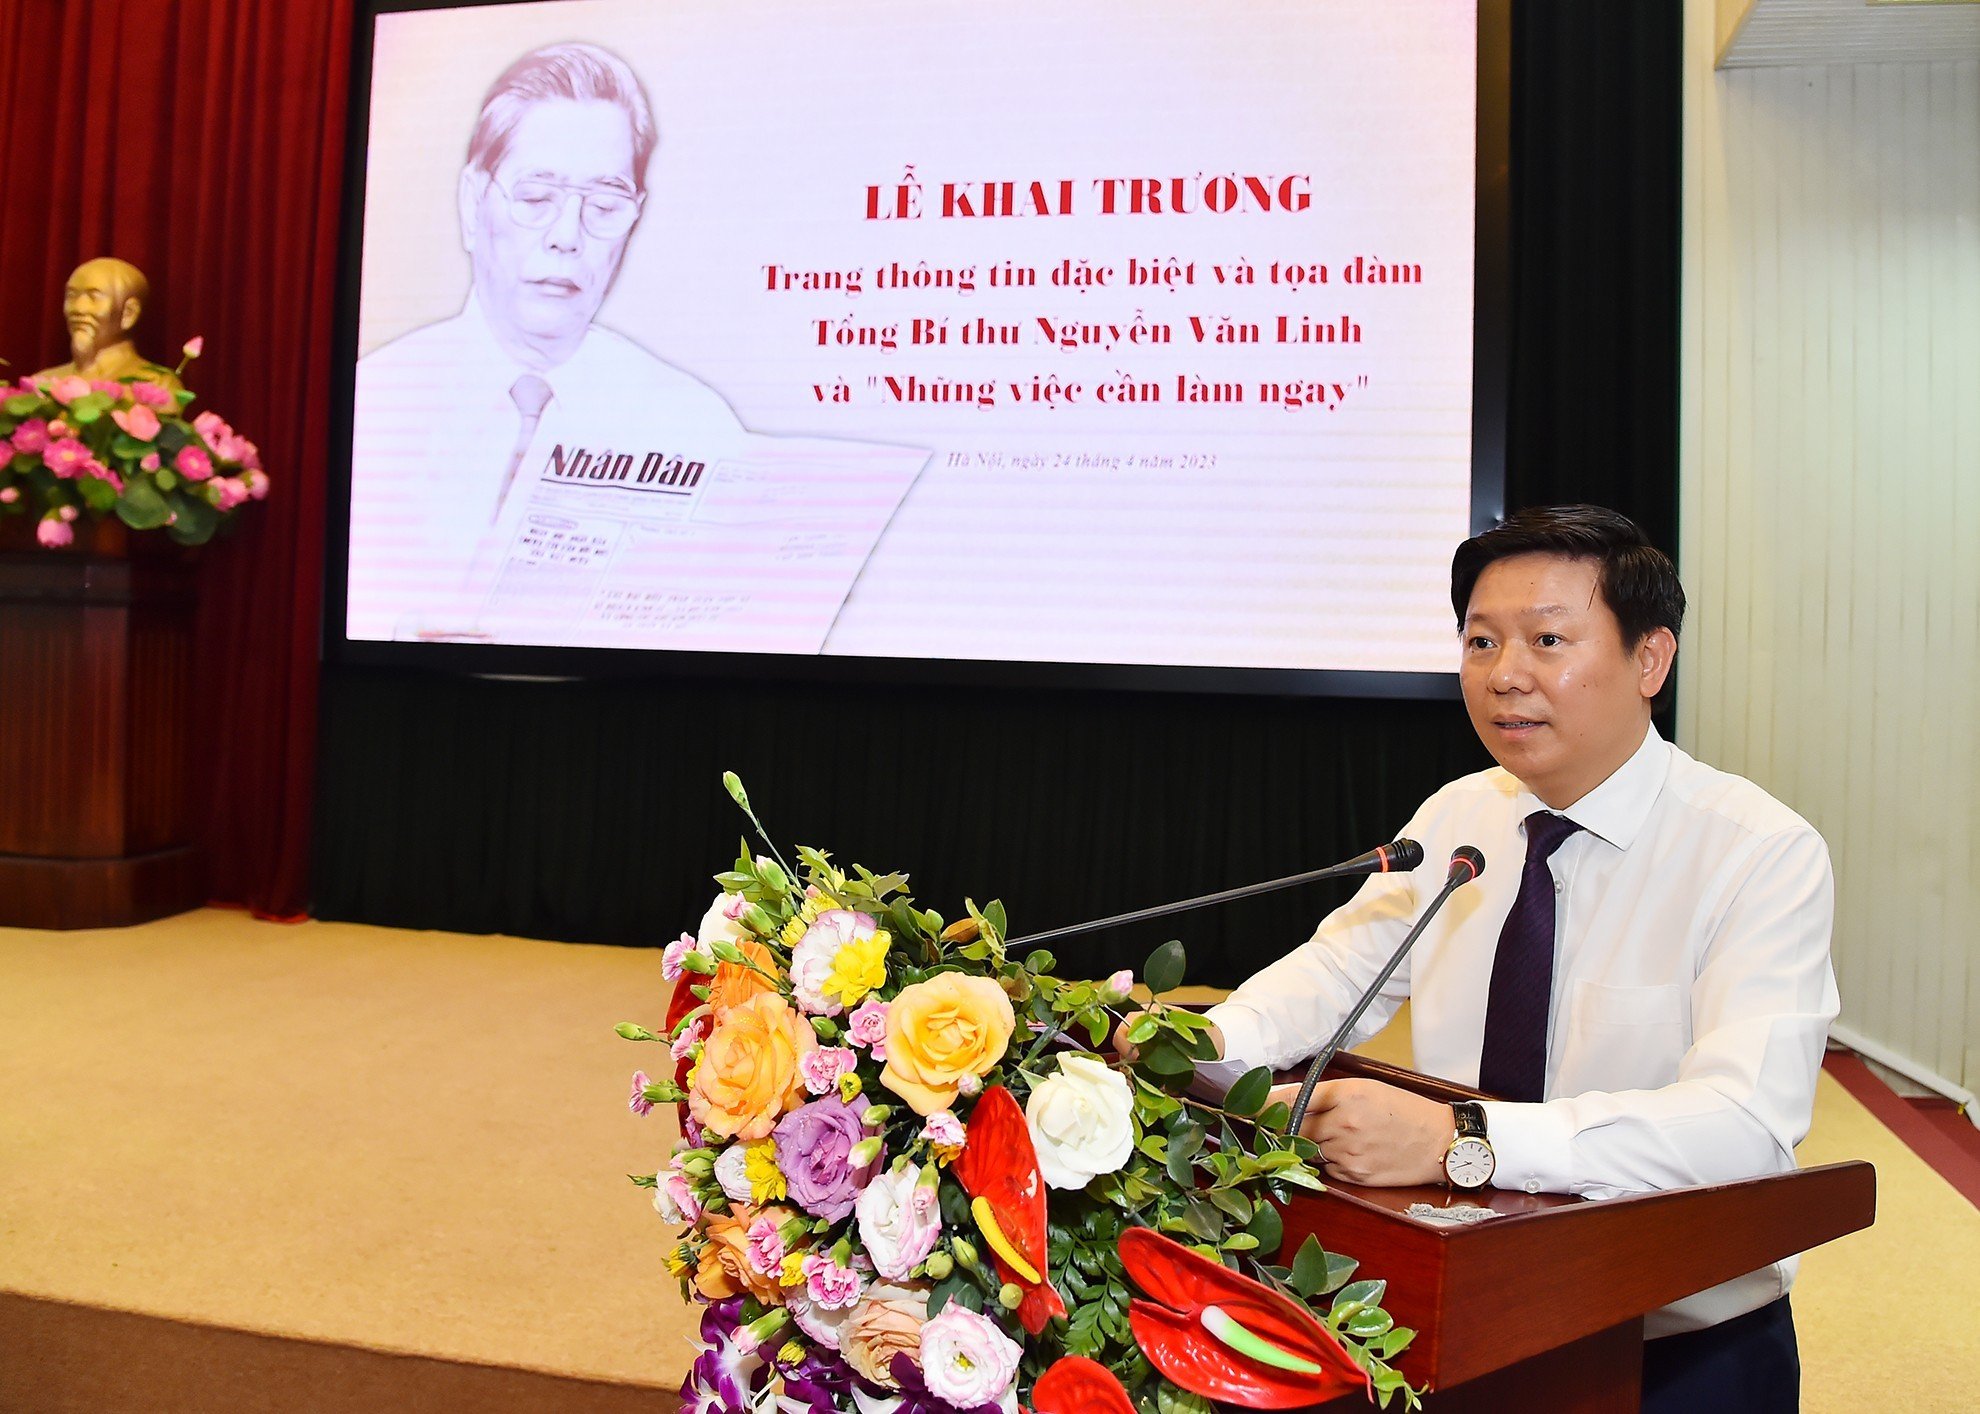 Báo Nhân Dân khai trương trang thông tin đặc biệt về Tổng Bí thư Nguyễn Văn Linh - Ảnh 5.